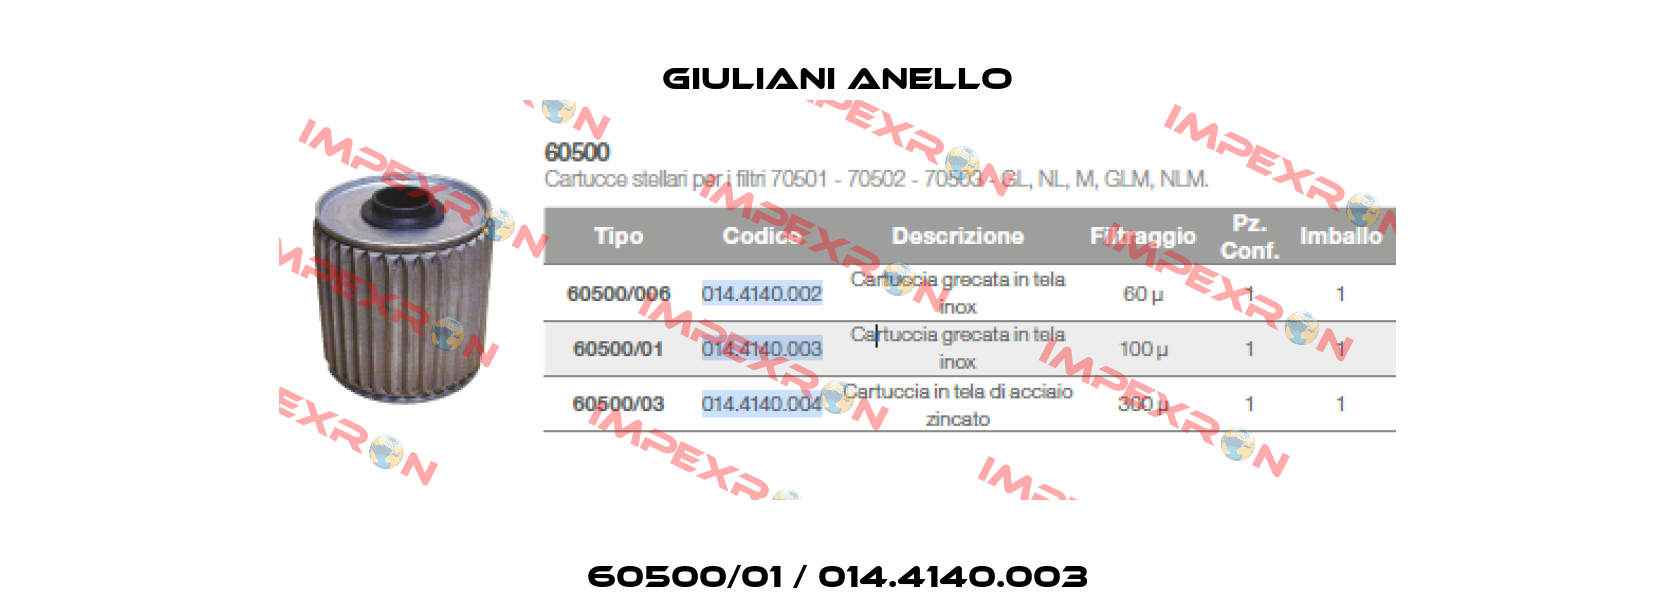 60500/01 / 014.4140.003 Giuliani Anello